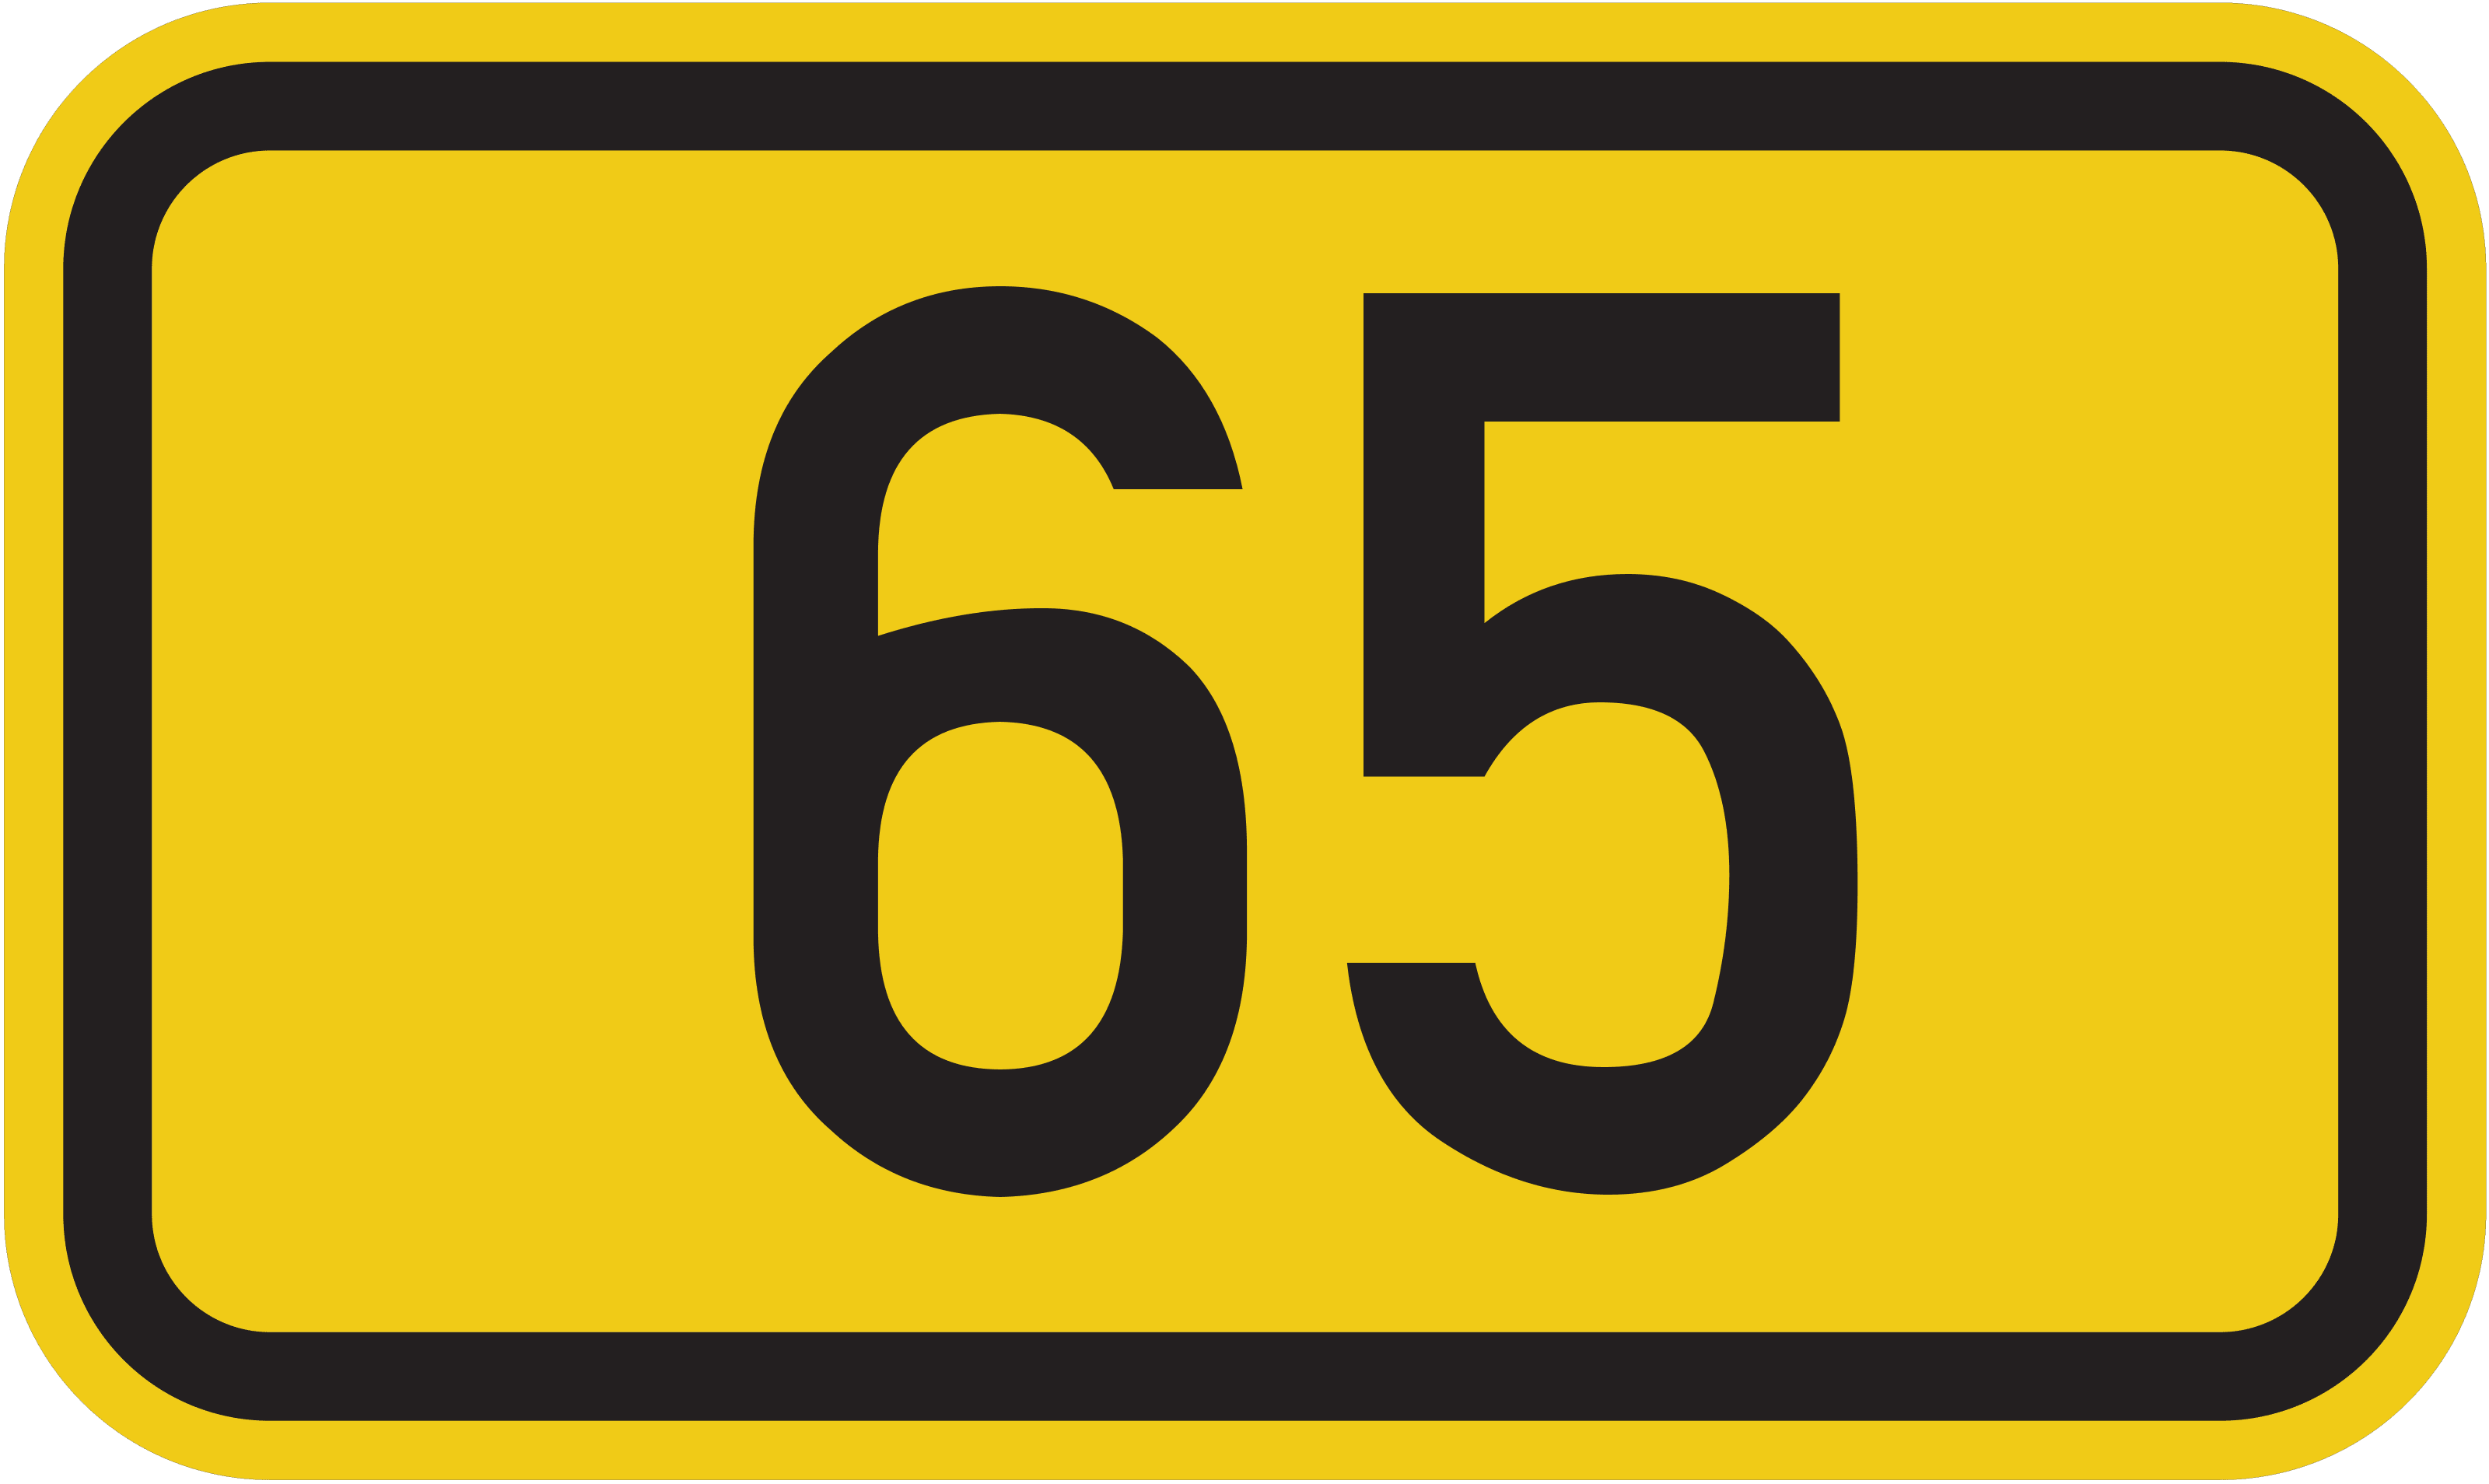 Bundesstraße B 65